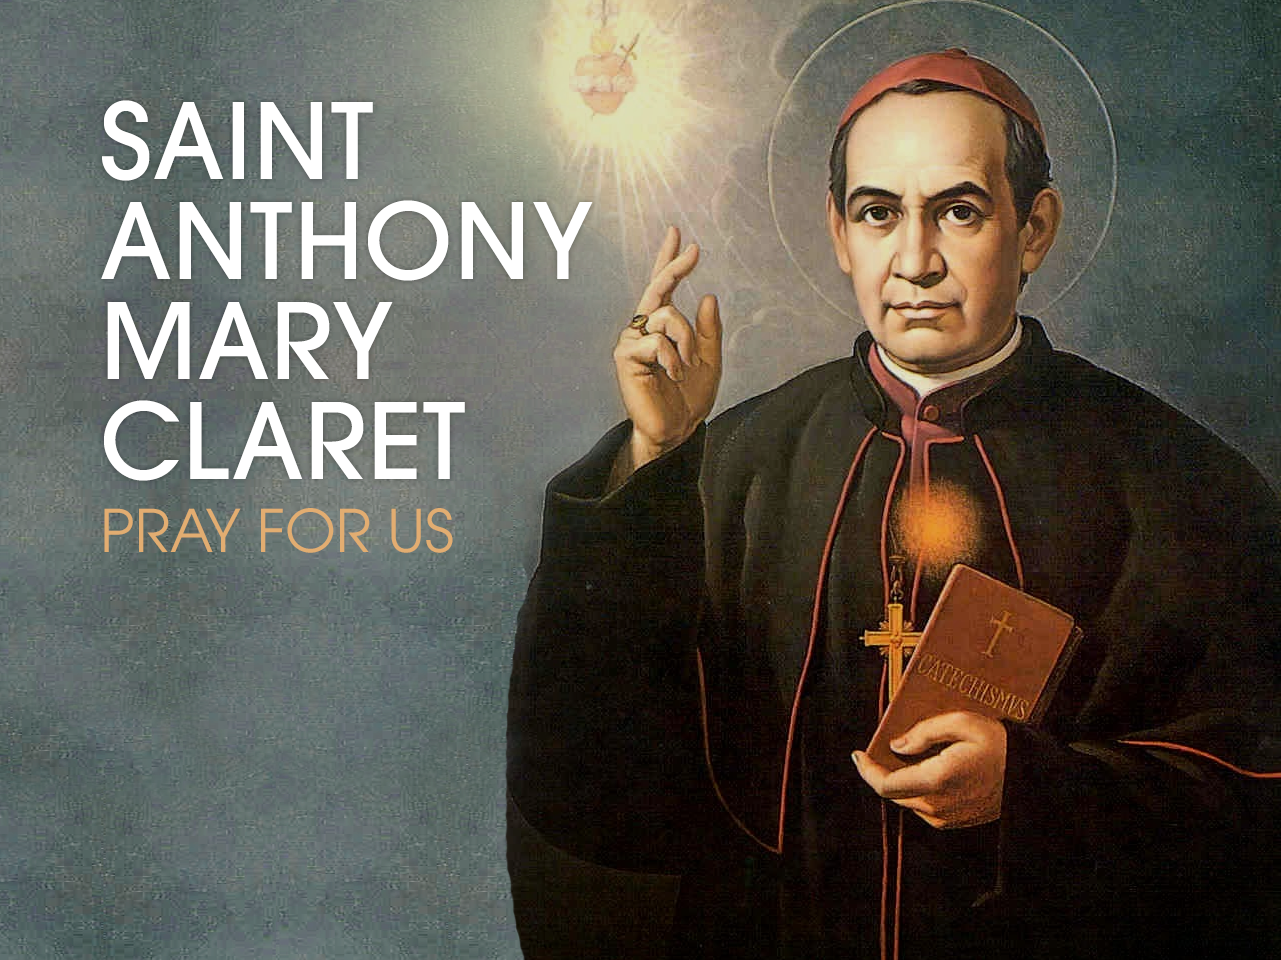 St. Anthony Mary Claret